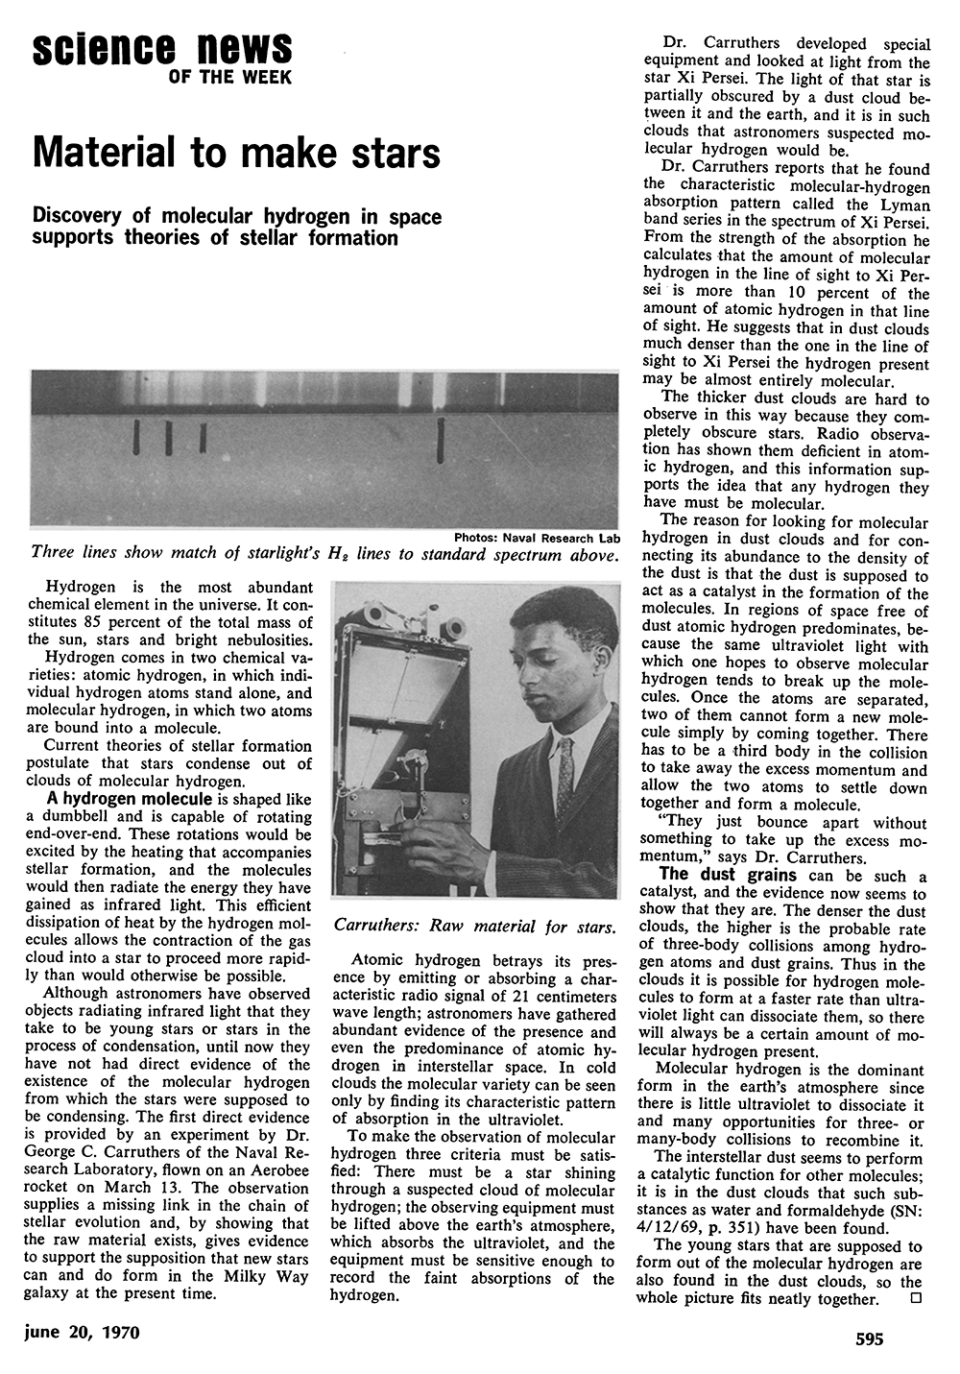 著名的校友 - 乔治·卡鲁瑟斯（George Carruthers） - 这篇科学新闻文章讨论了空间中分子氢的发现，并使用Carruthers在1969年发明的望远镜证明。